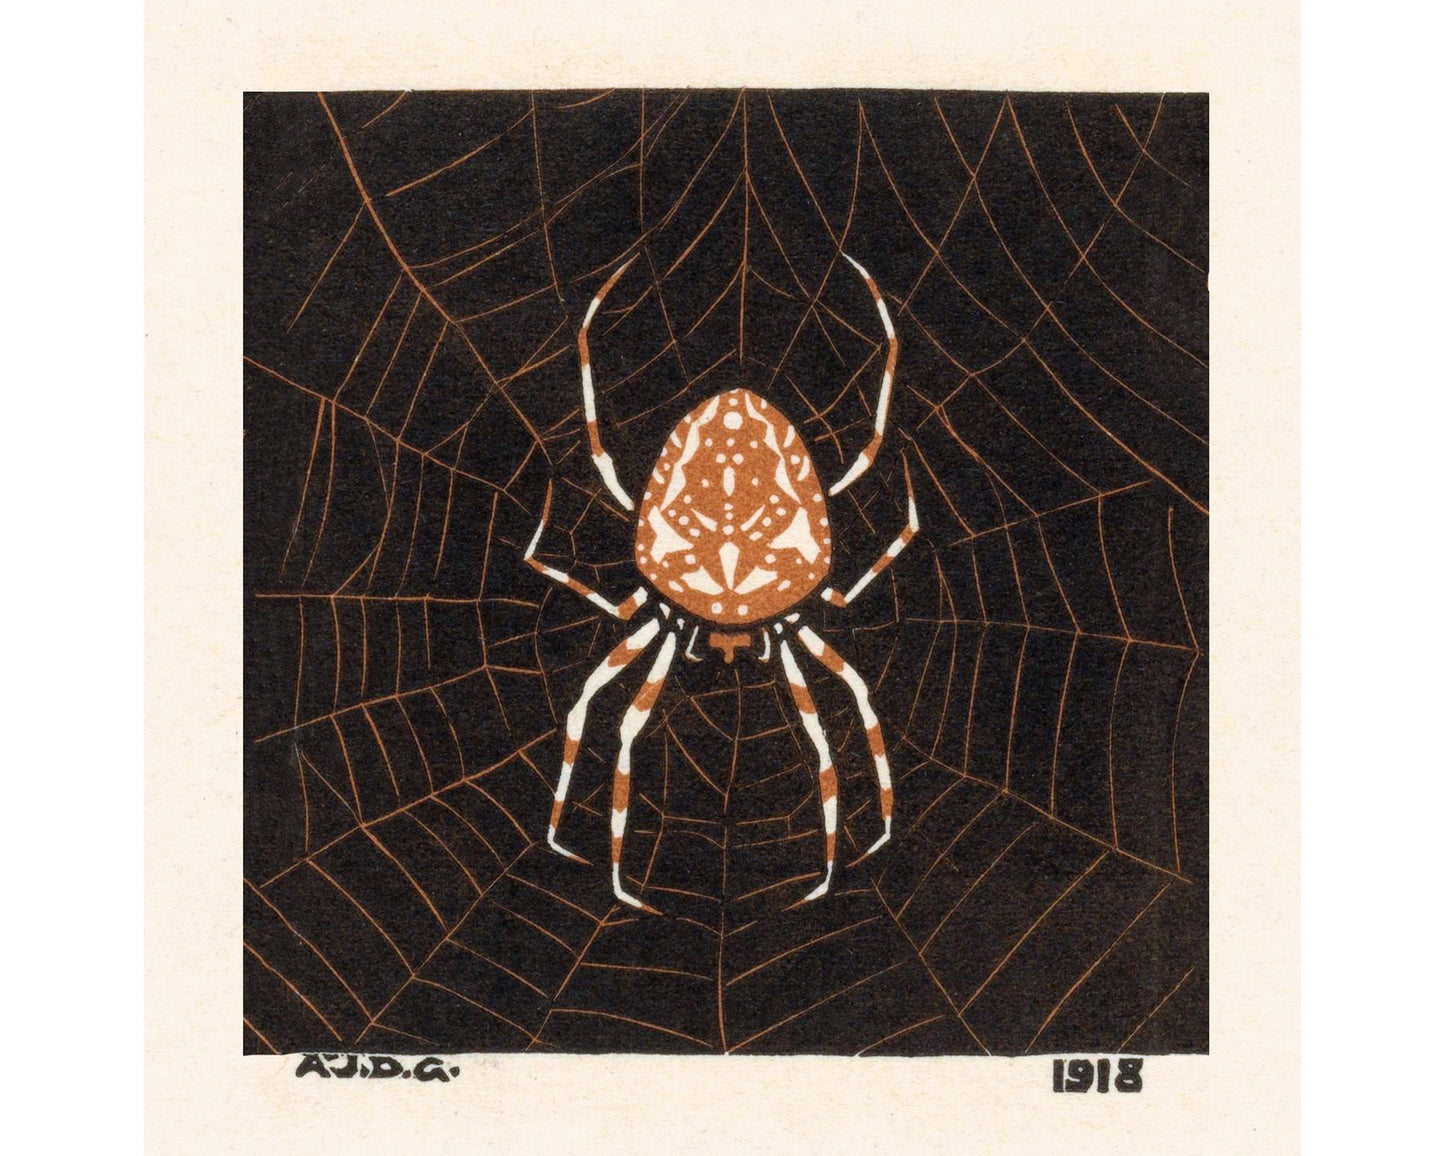 Vintage spider web art | Art nouveau insect woodcut print | Arachnid wall art | Julie de Graag | Female artist | Vintage Halloween décor